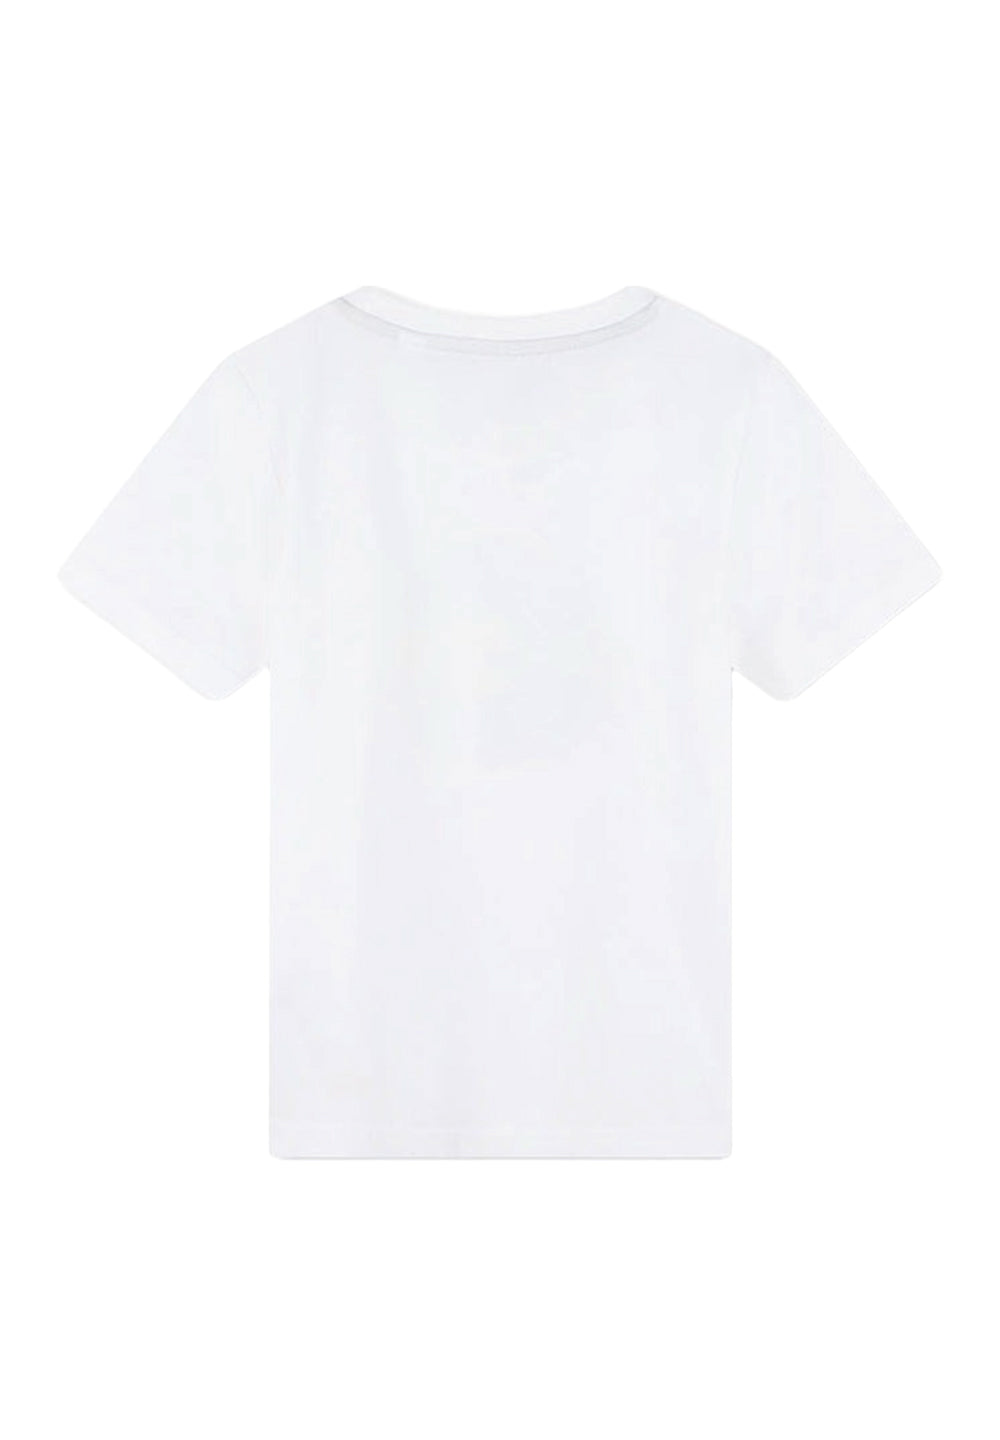 Weißes T-Shirt für Jungen